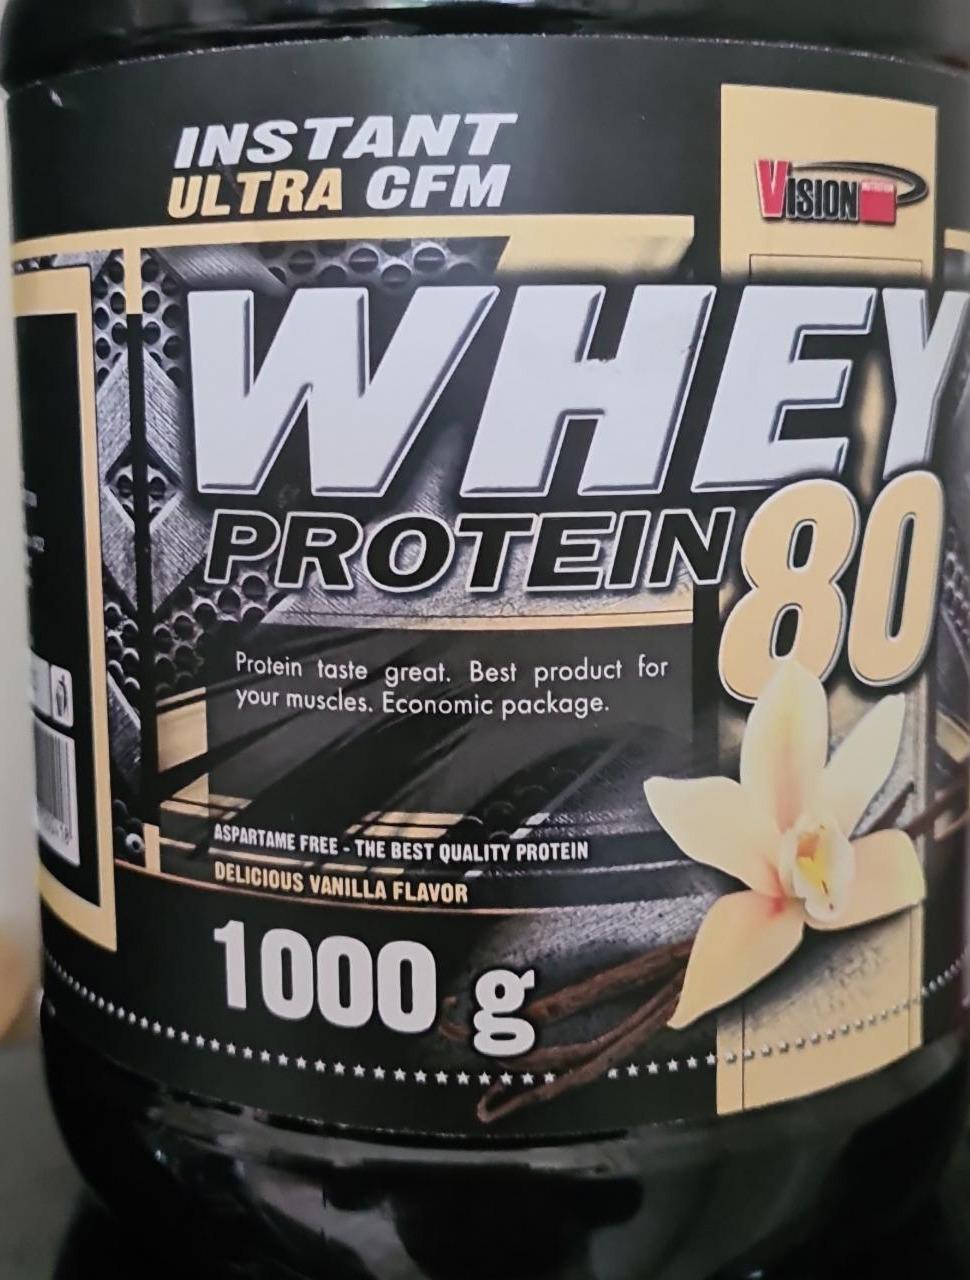 Fotografie - whey protein 80 vanilla flavor nutrition team vision